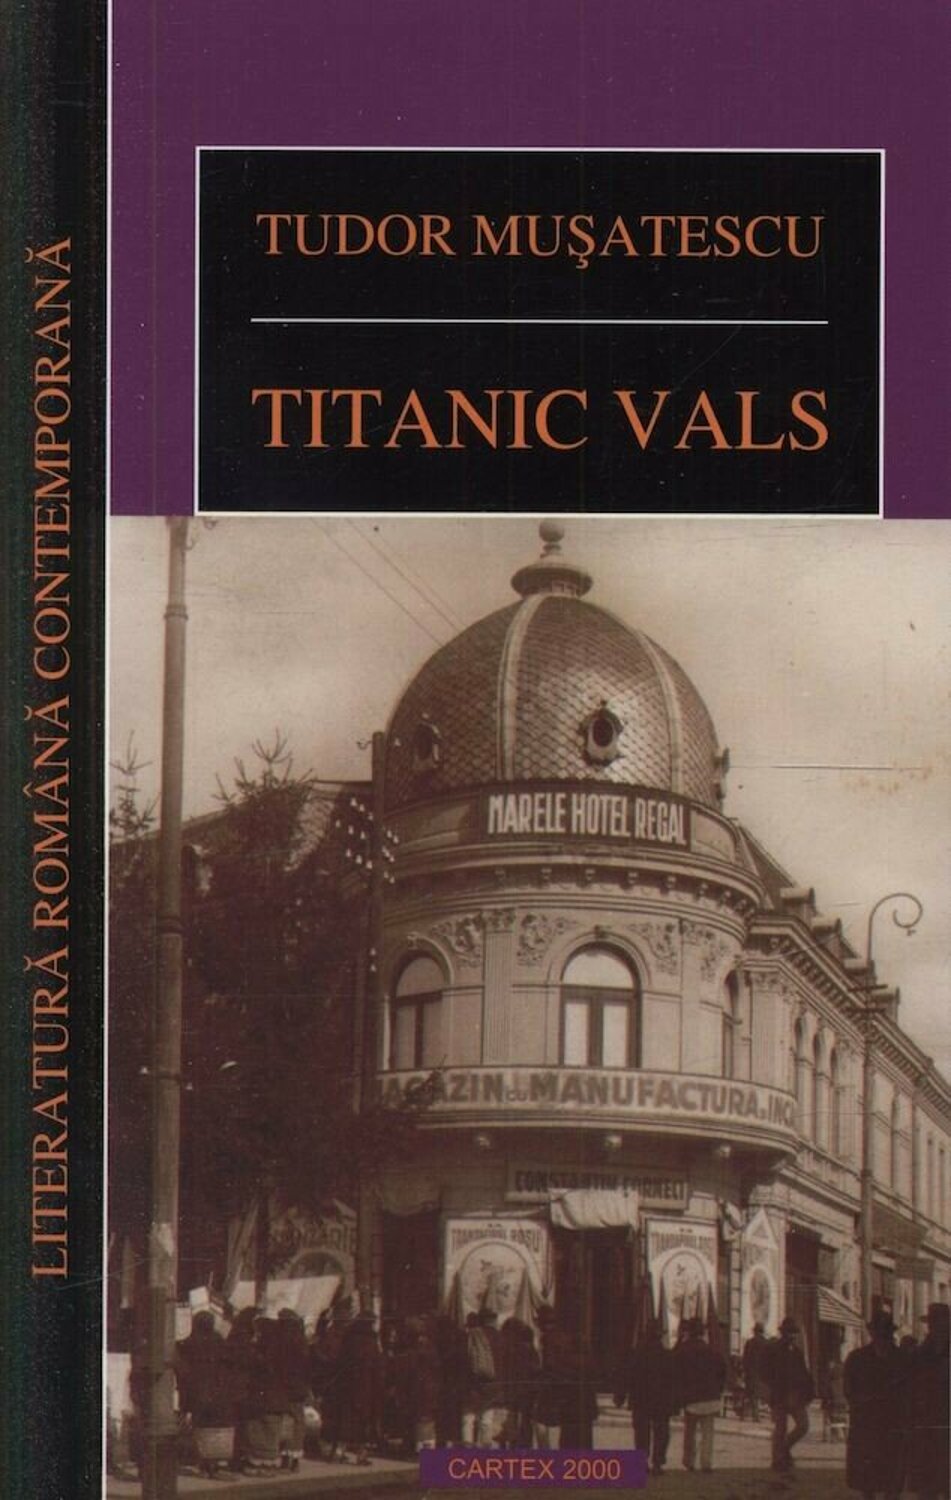 Coperta cărții: Titanic vals - lonnieyoungblood.com